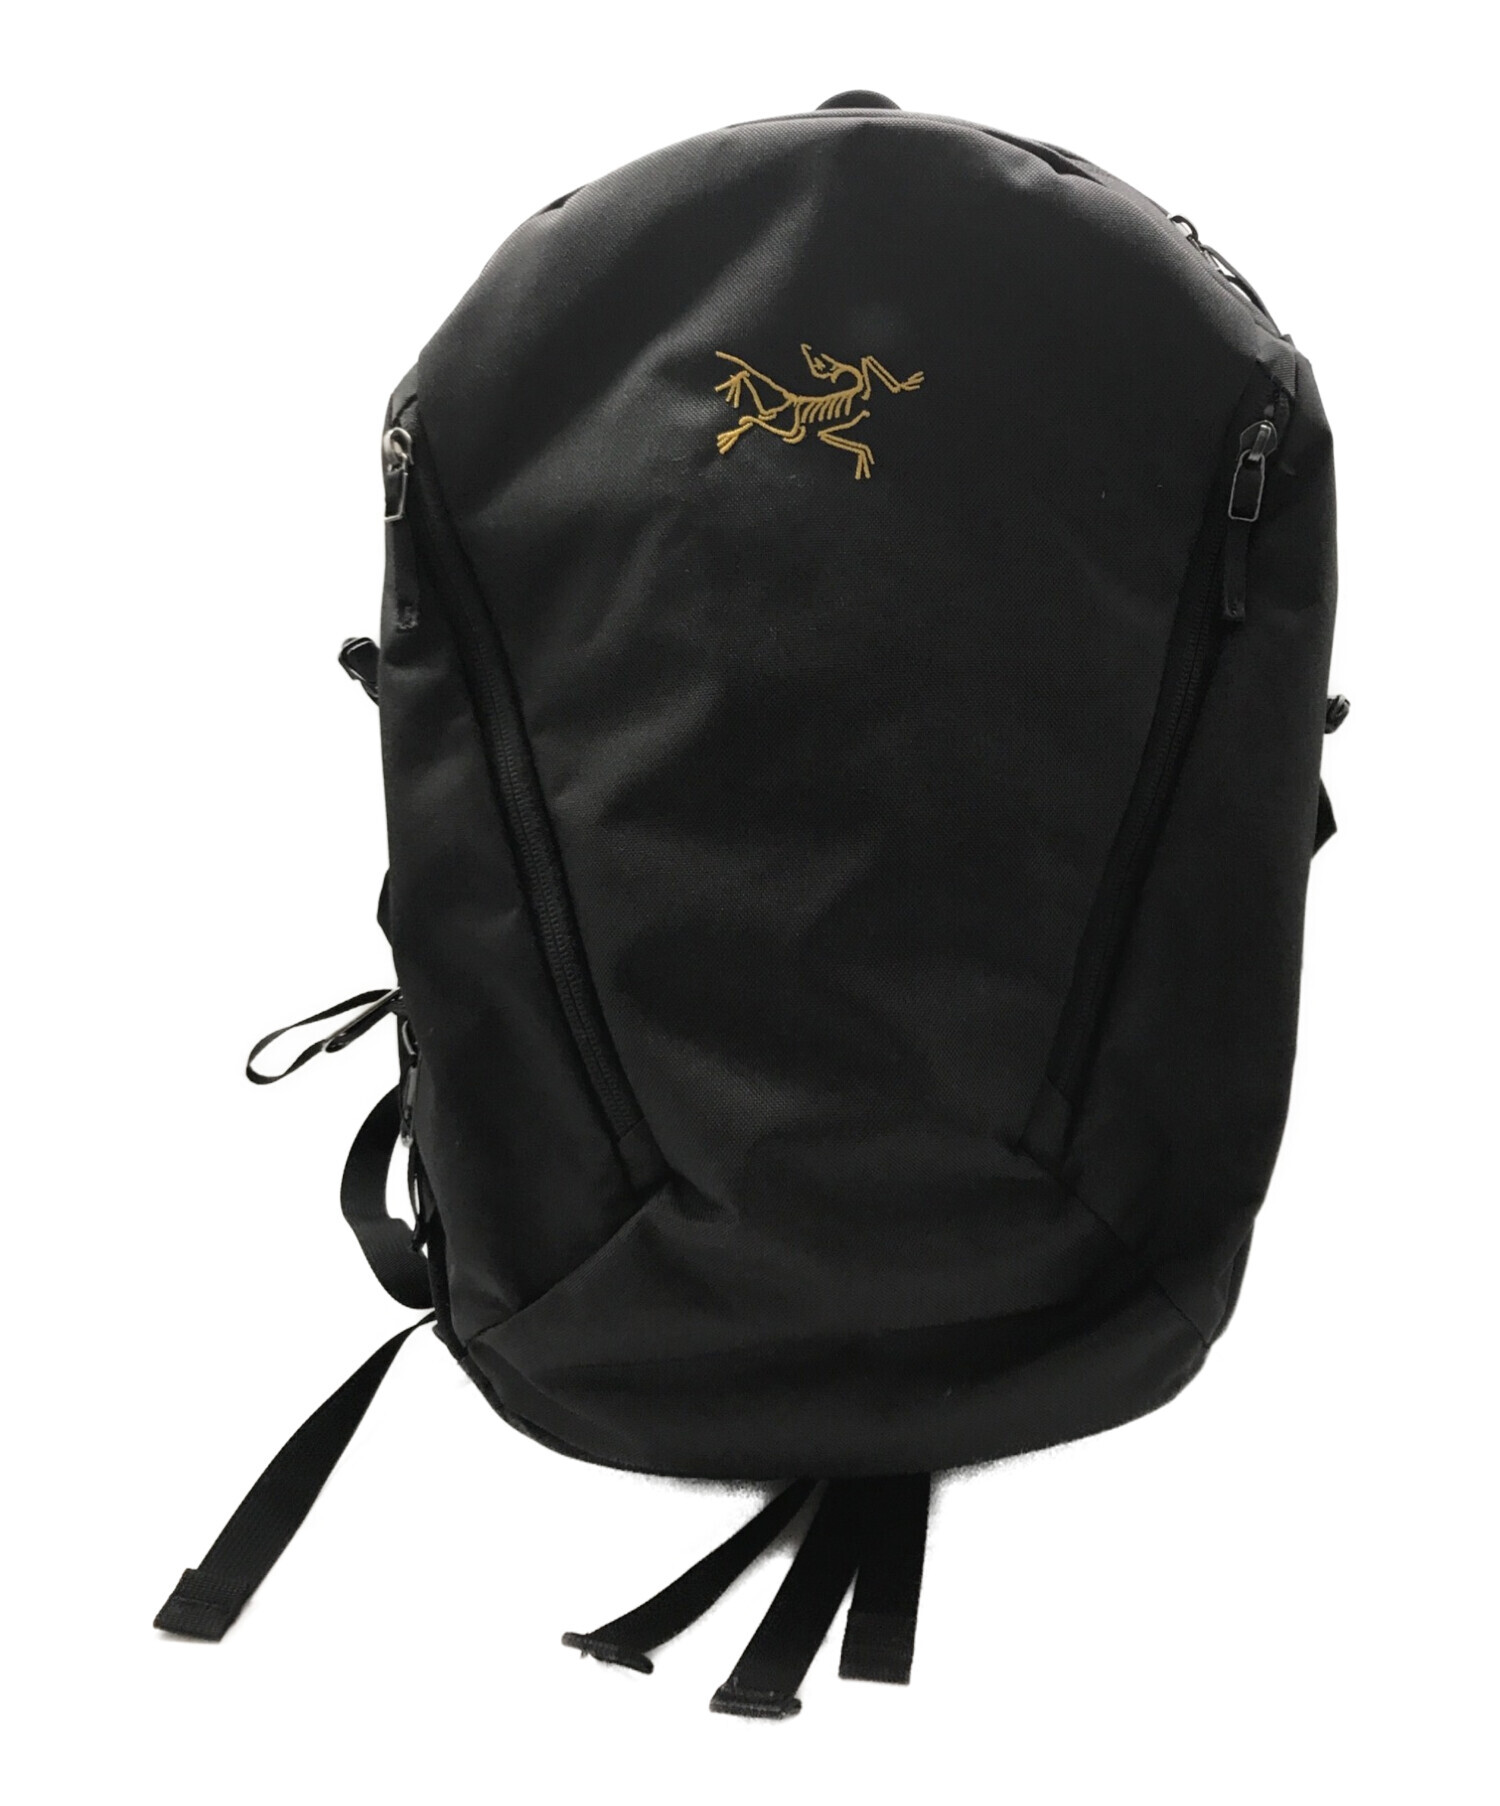 ARC'TERYX (アークテリクス) Mantis 26 Backpack　29560 ブラック